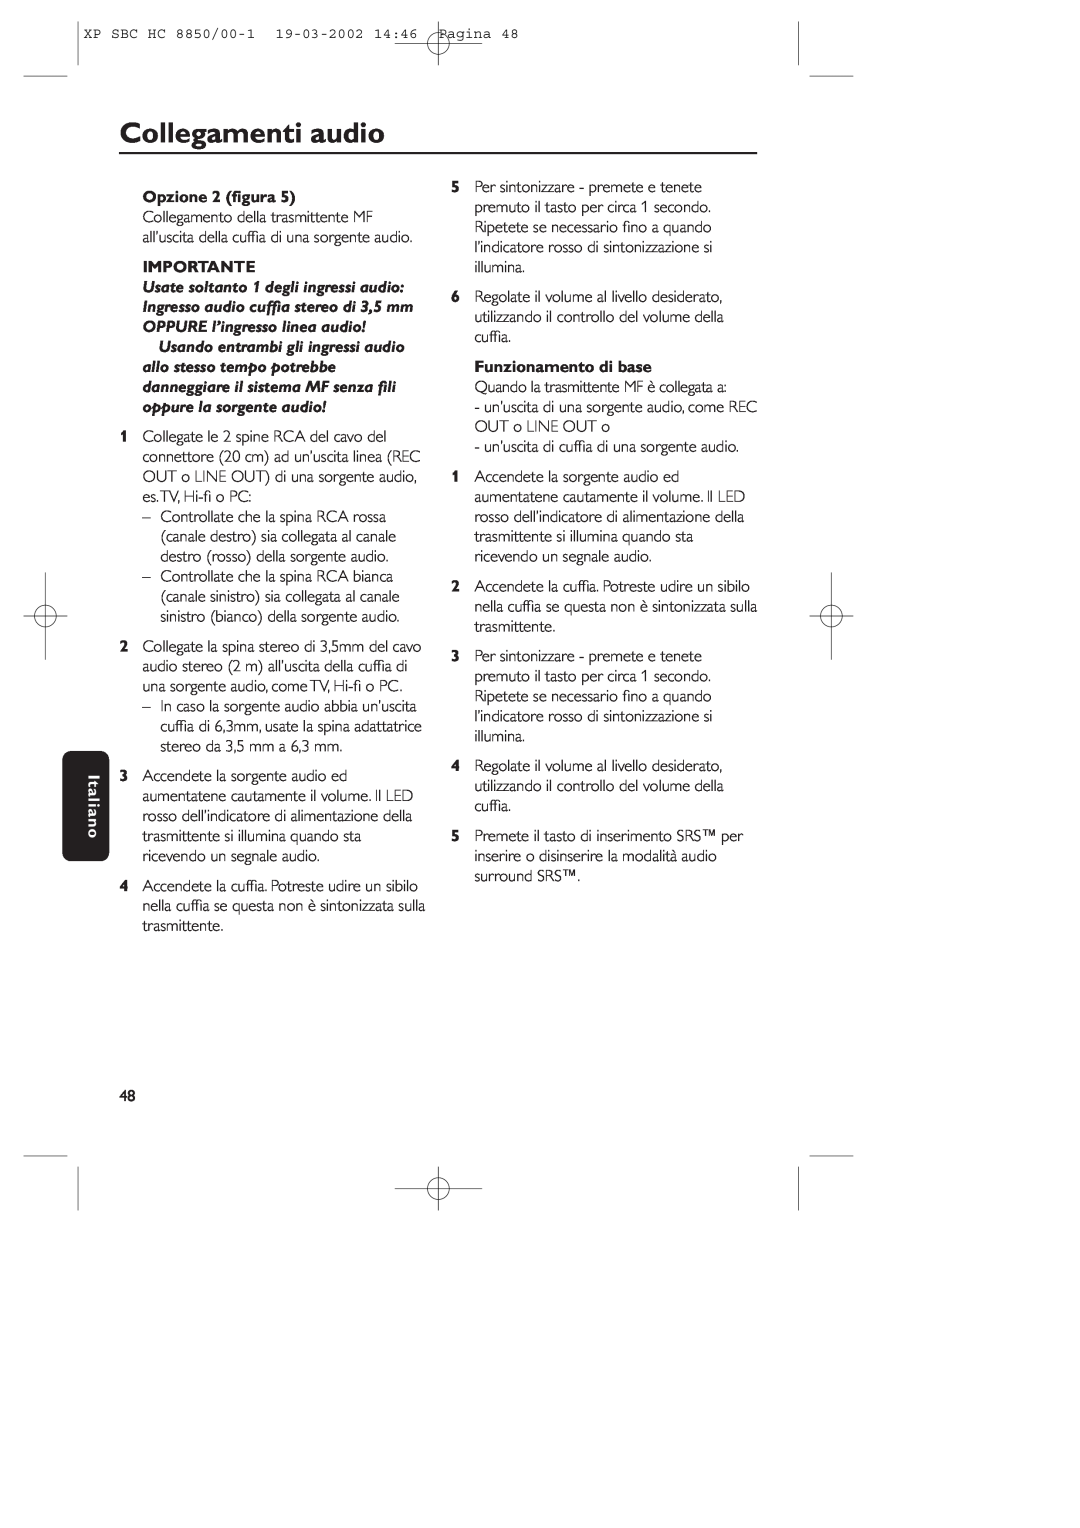 Philips HC8850 manual Collegamenti audio, Italiano, Opzione 2 ﬁgura, Importante, Funzionamento di base 